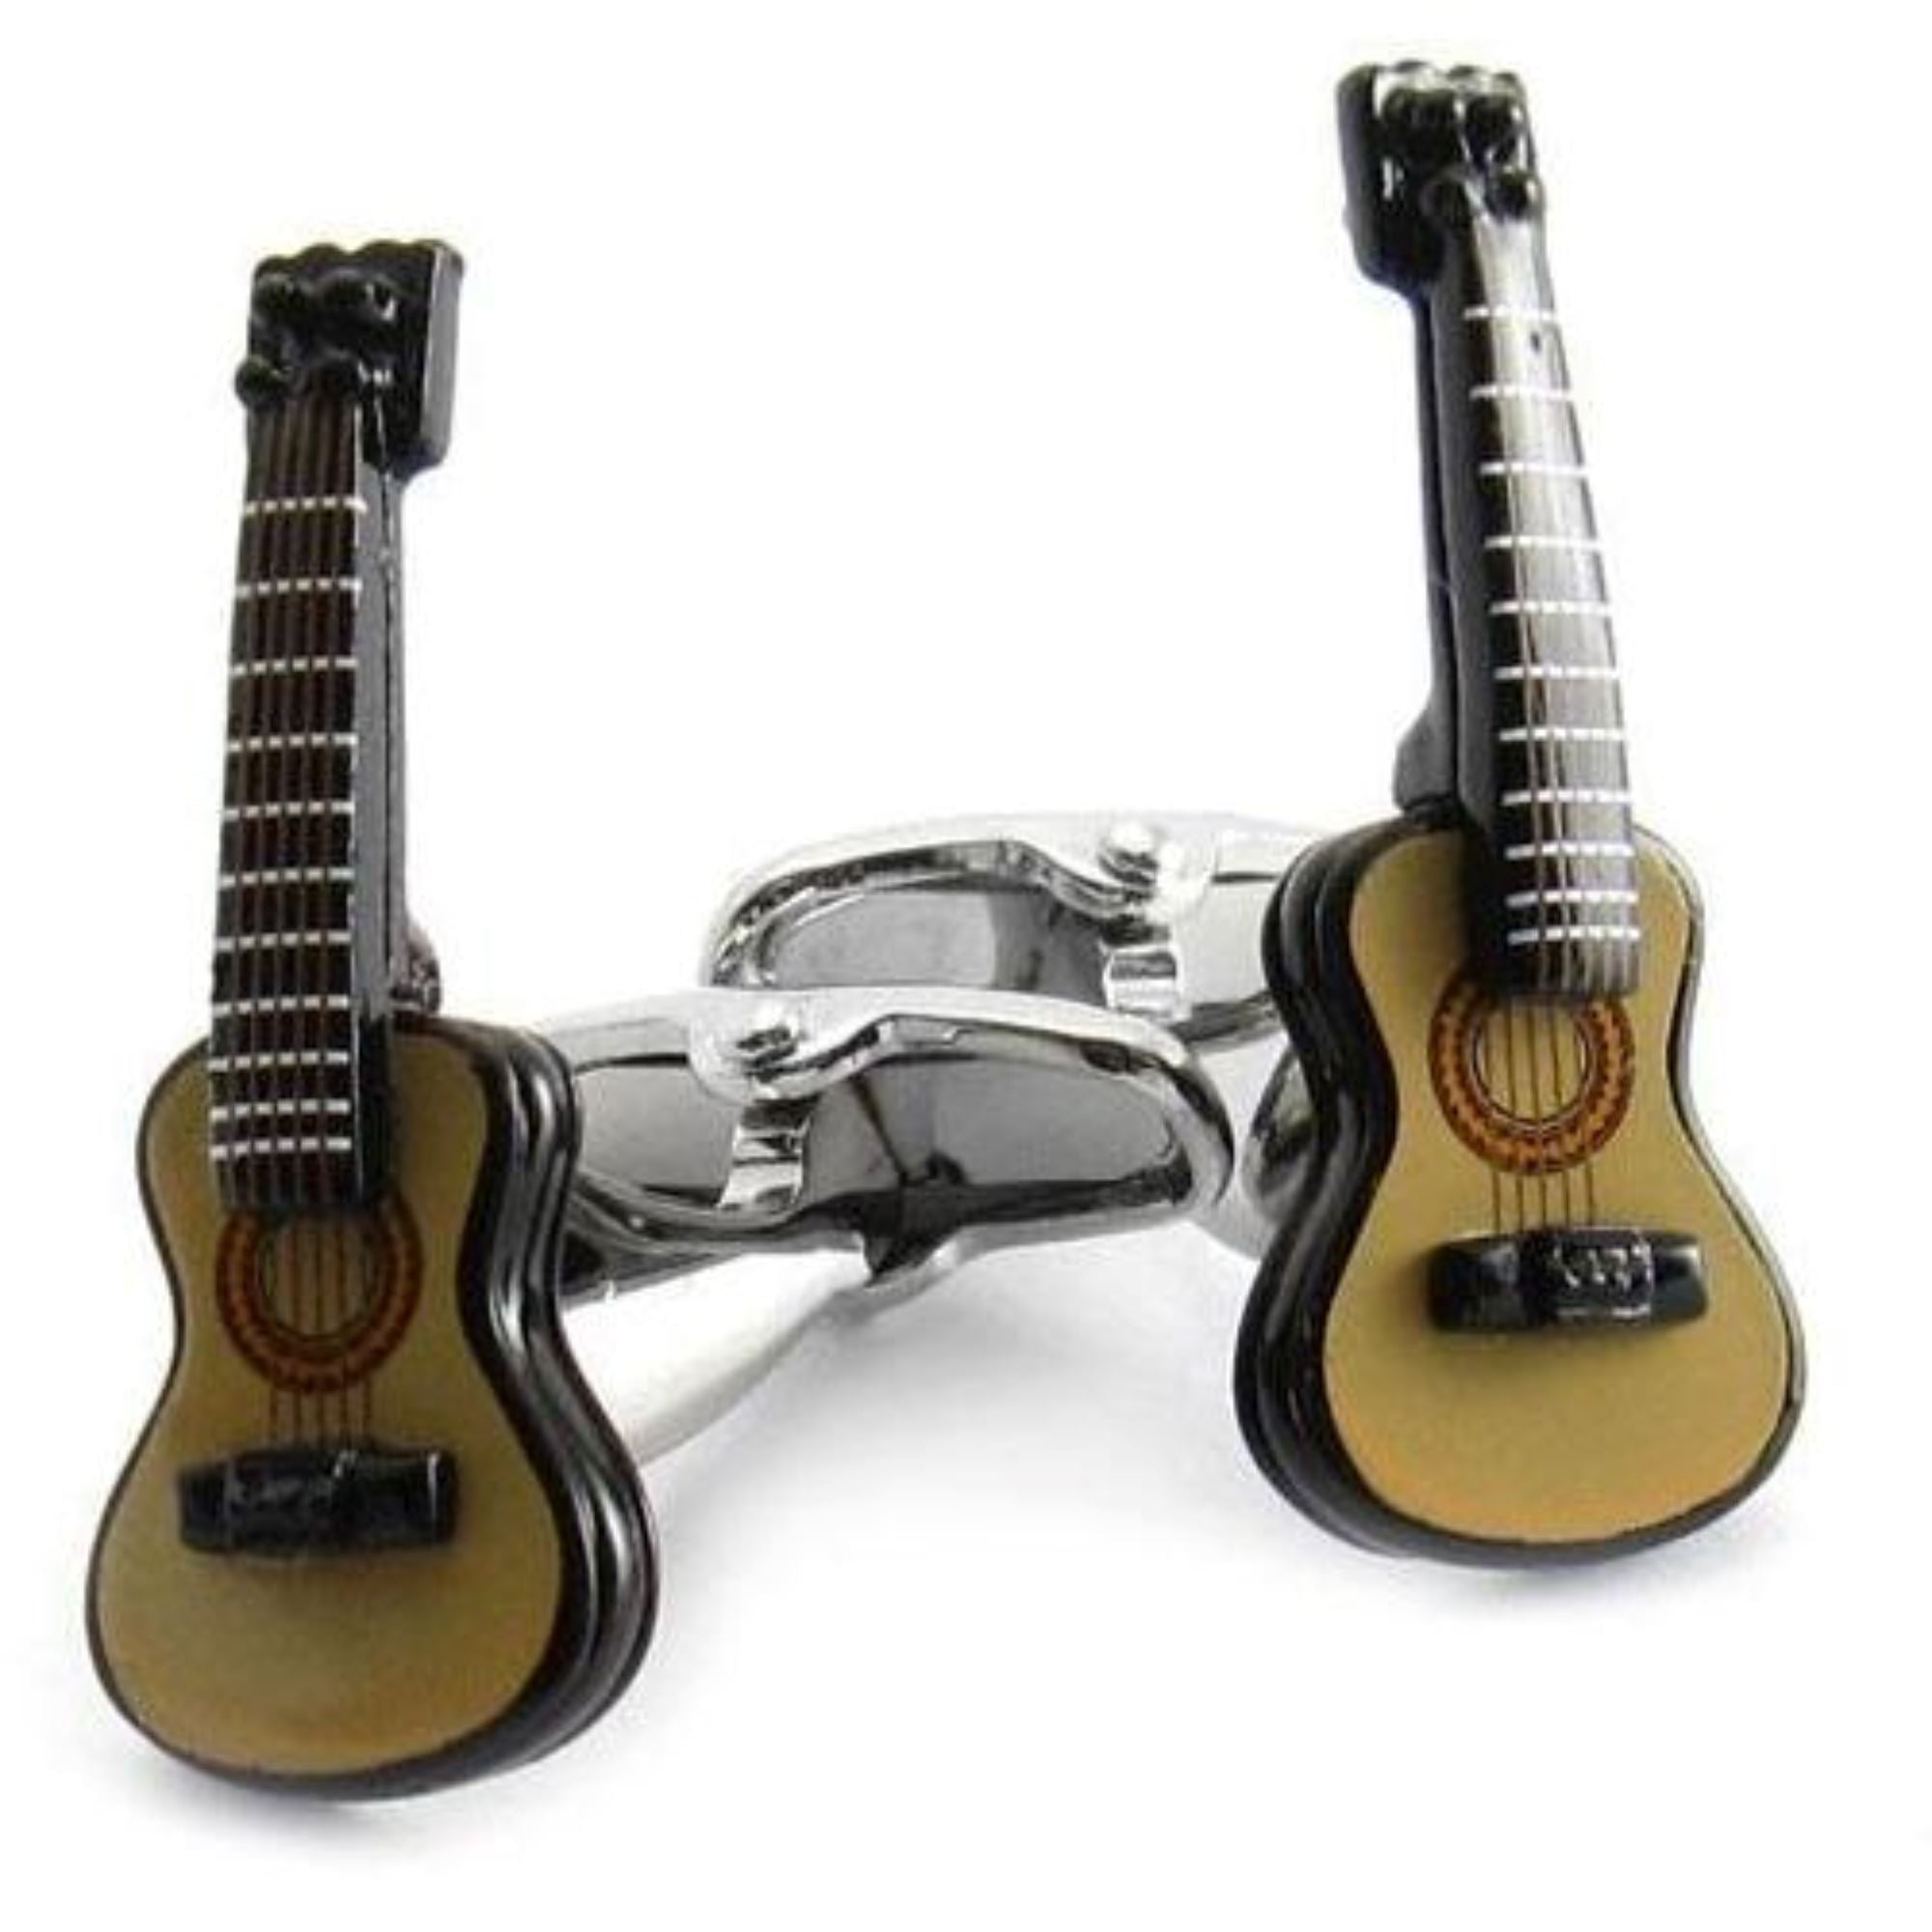 Acoustic Guitar Cufflinks Novelty Cufflinks Clinks Australia Acoustic Guitar Cufflinks 